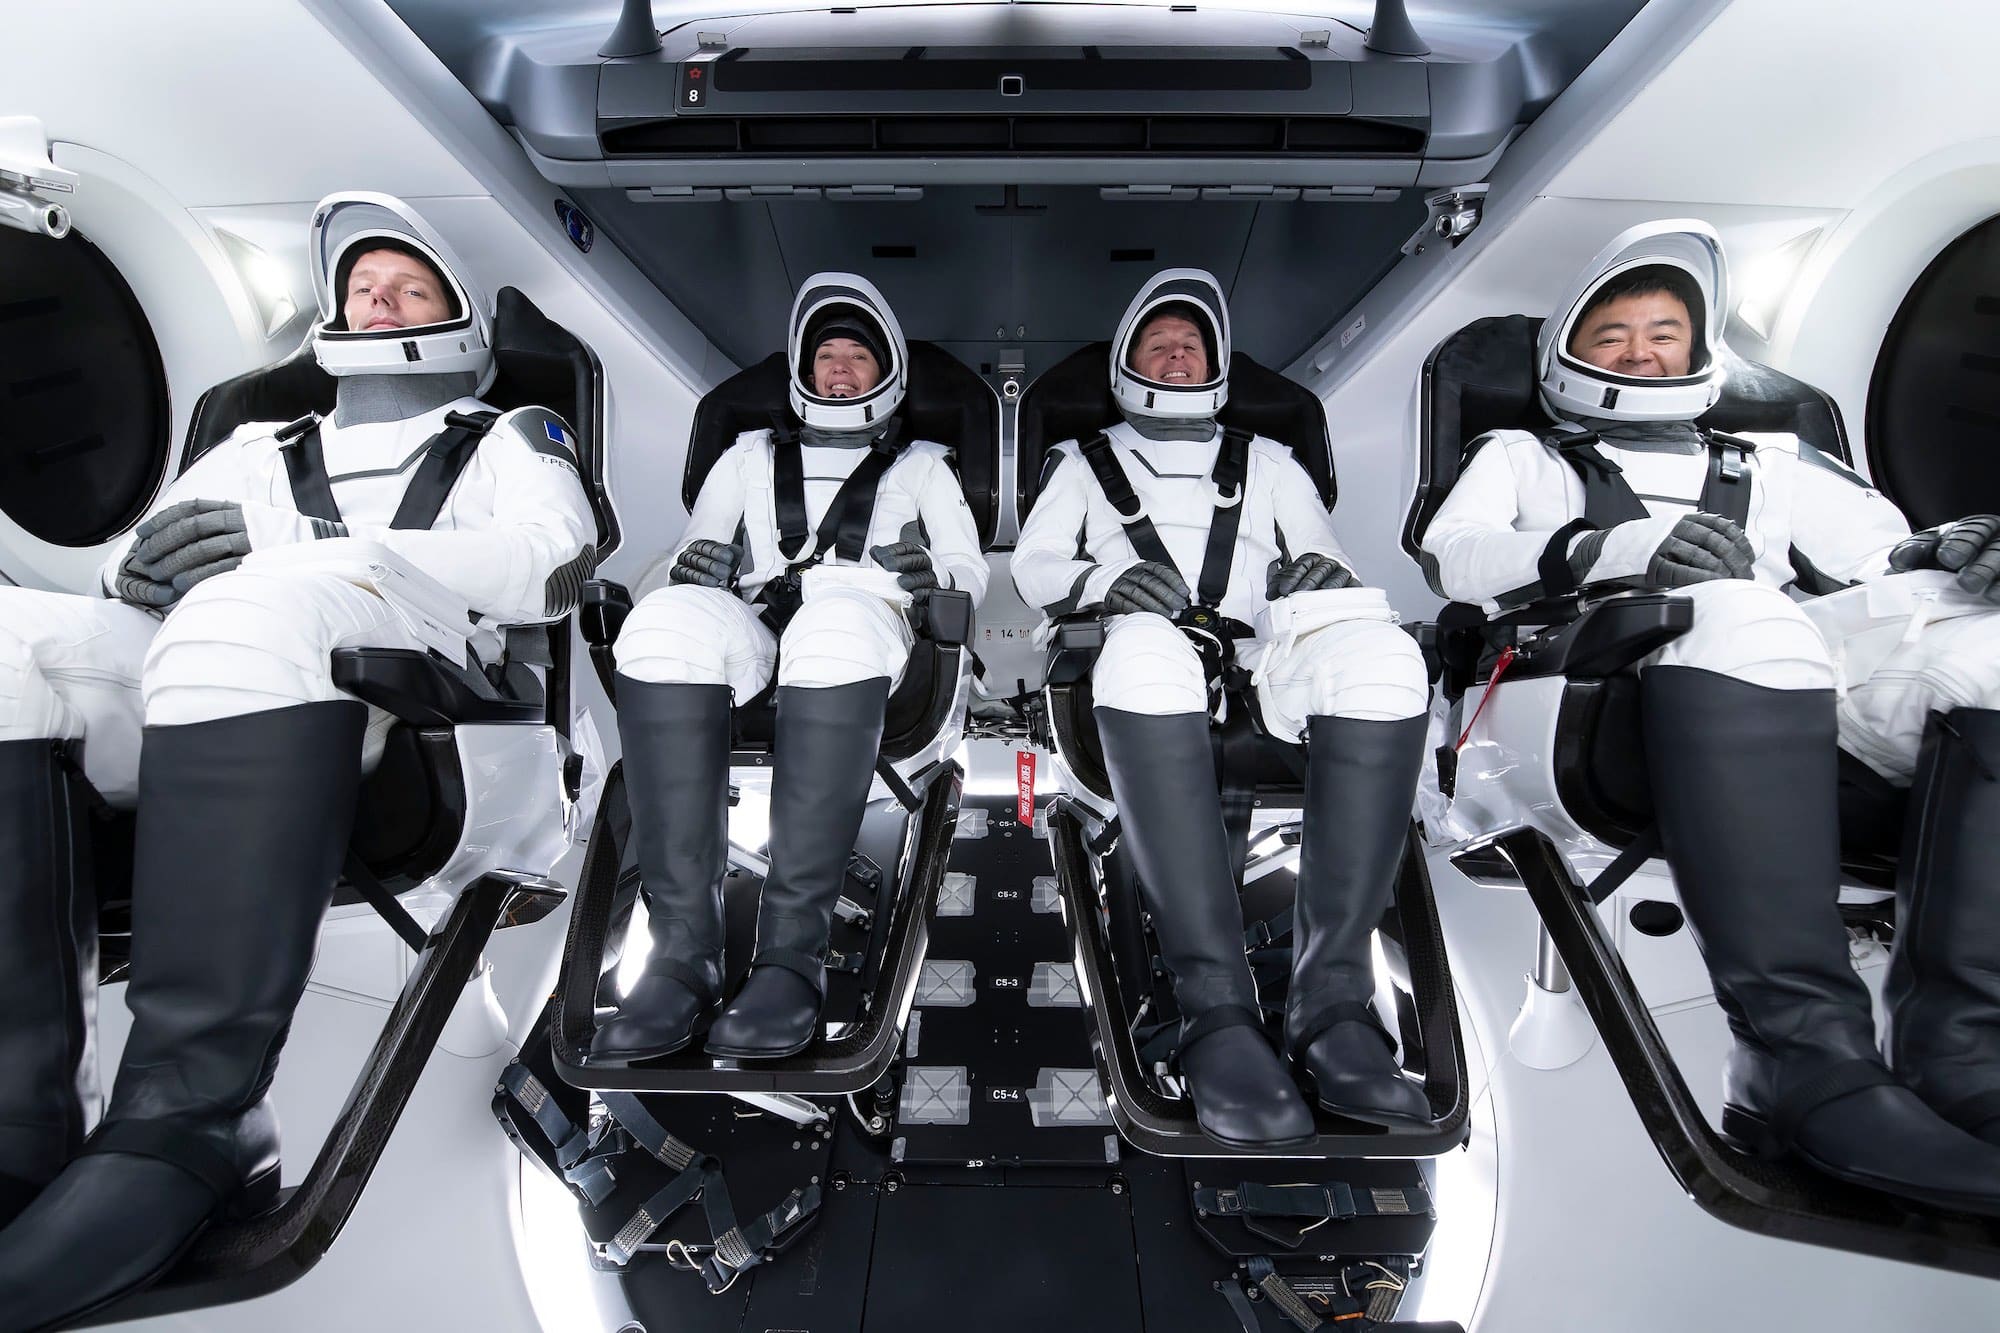 L’équipage de Crew-2 tel qu’il sera installé à bord de la capsule Crew Dragon Endeavour (de gauche à droite) : Thomas Pesquet, Megan McArthur, Shane Kimbrough et Akihiko Hoshide. Crédit : SpaceX